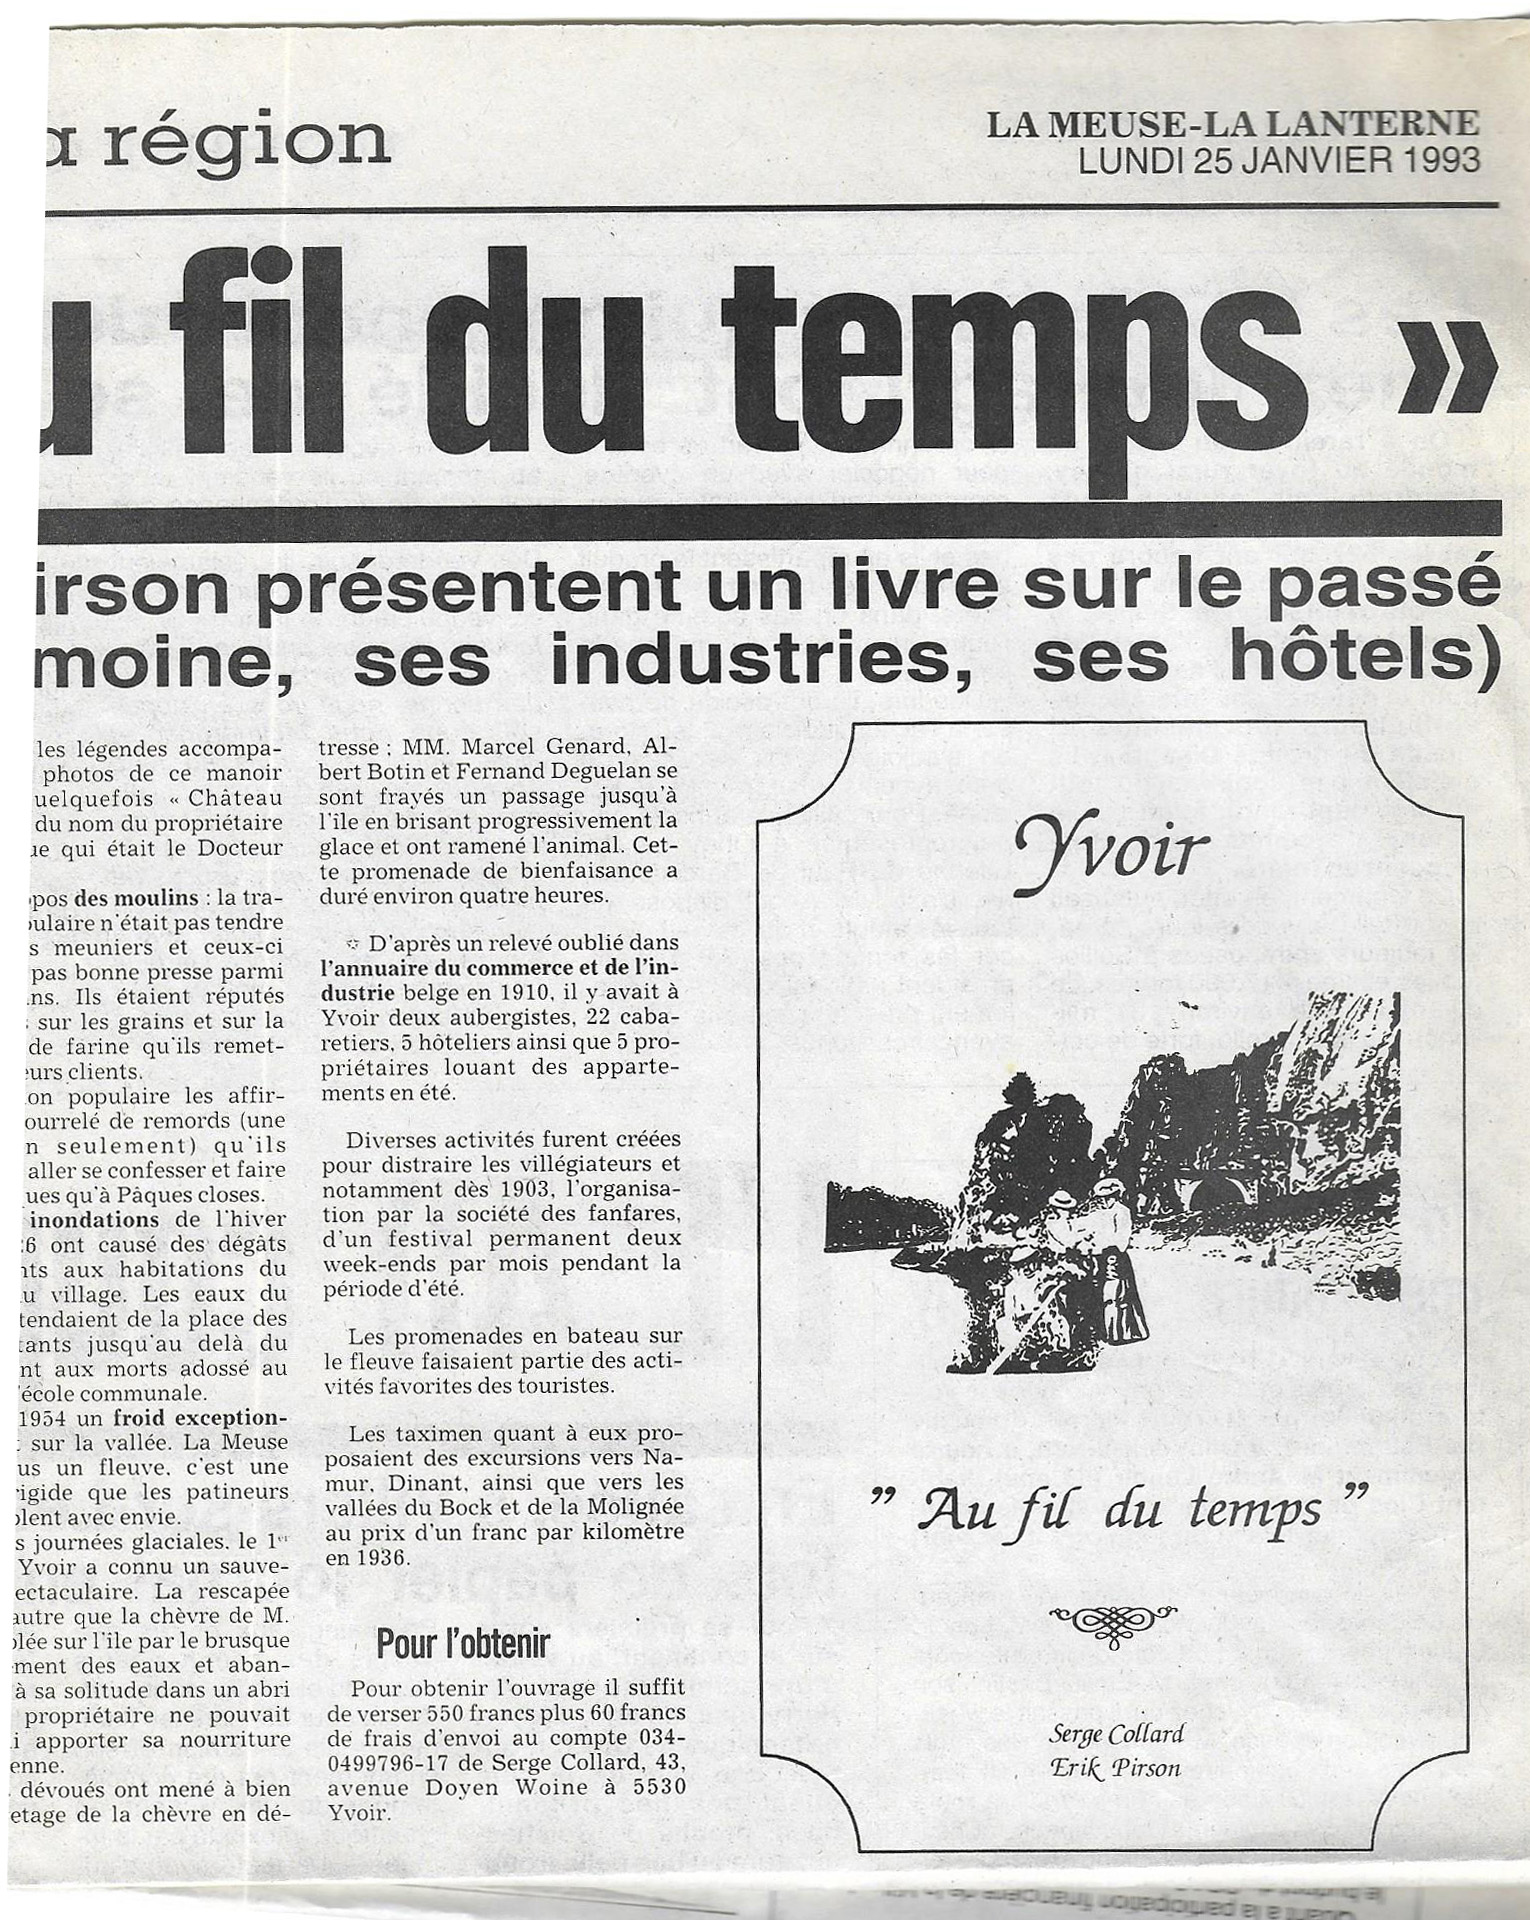 1993.1.25.2 - Yvoir au fil du temps - La Meuse.jpg